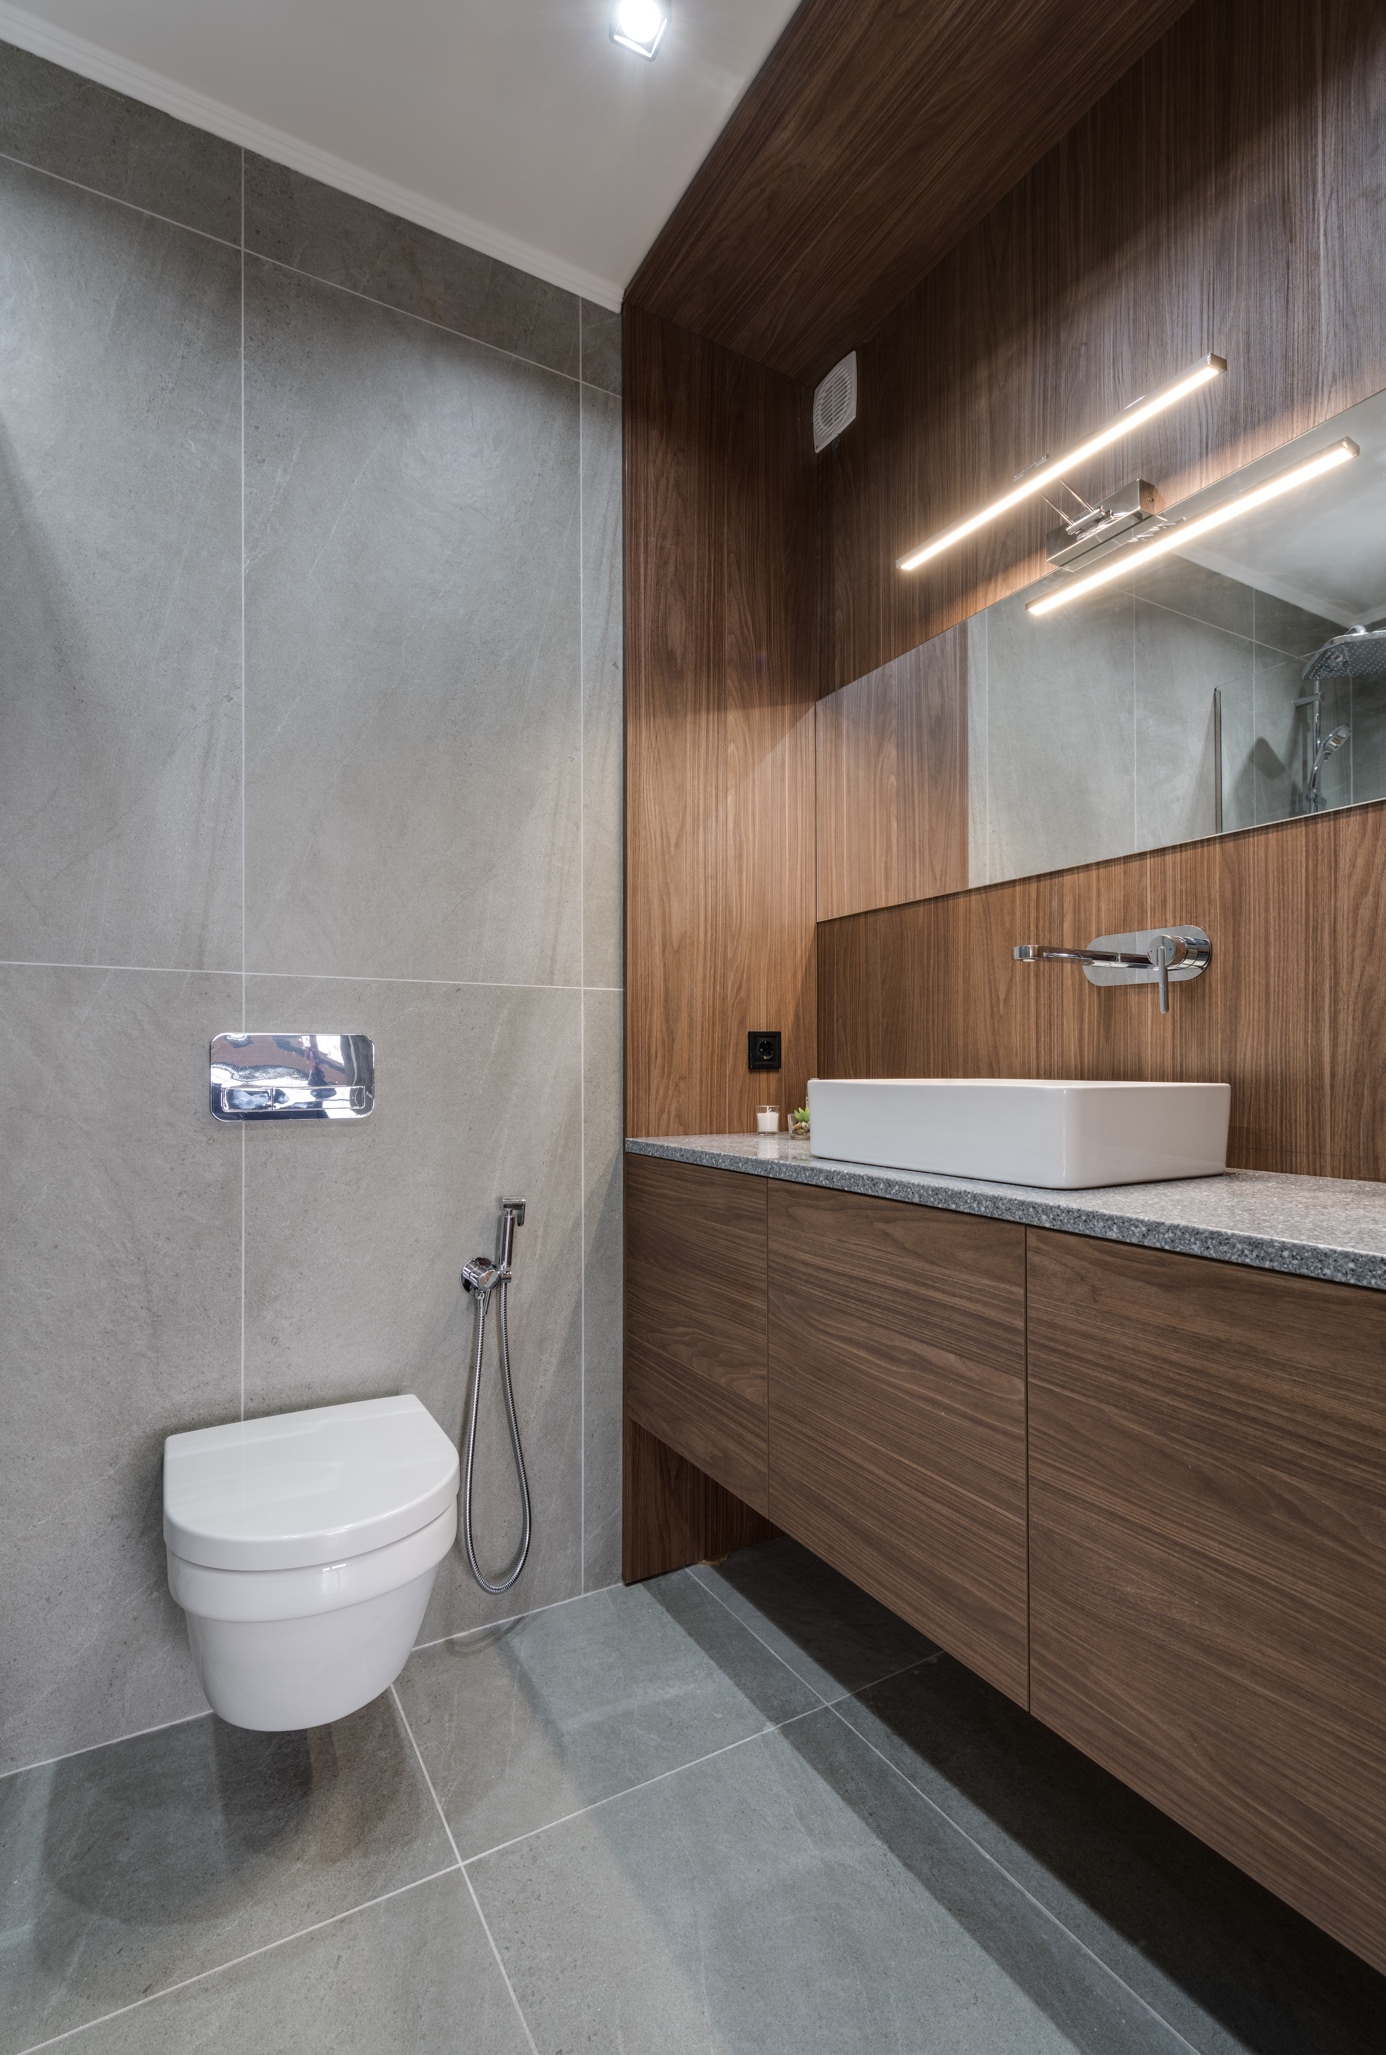 Salle de bain moderne avec une douchette pour WC